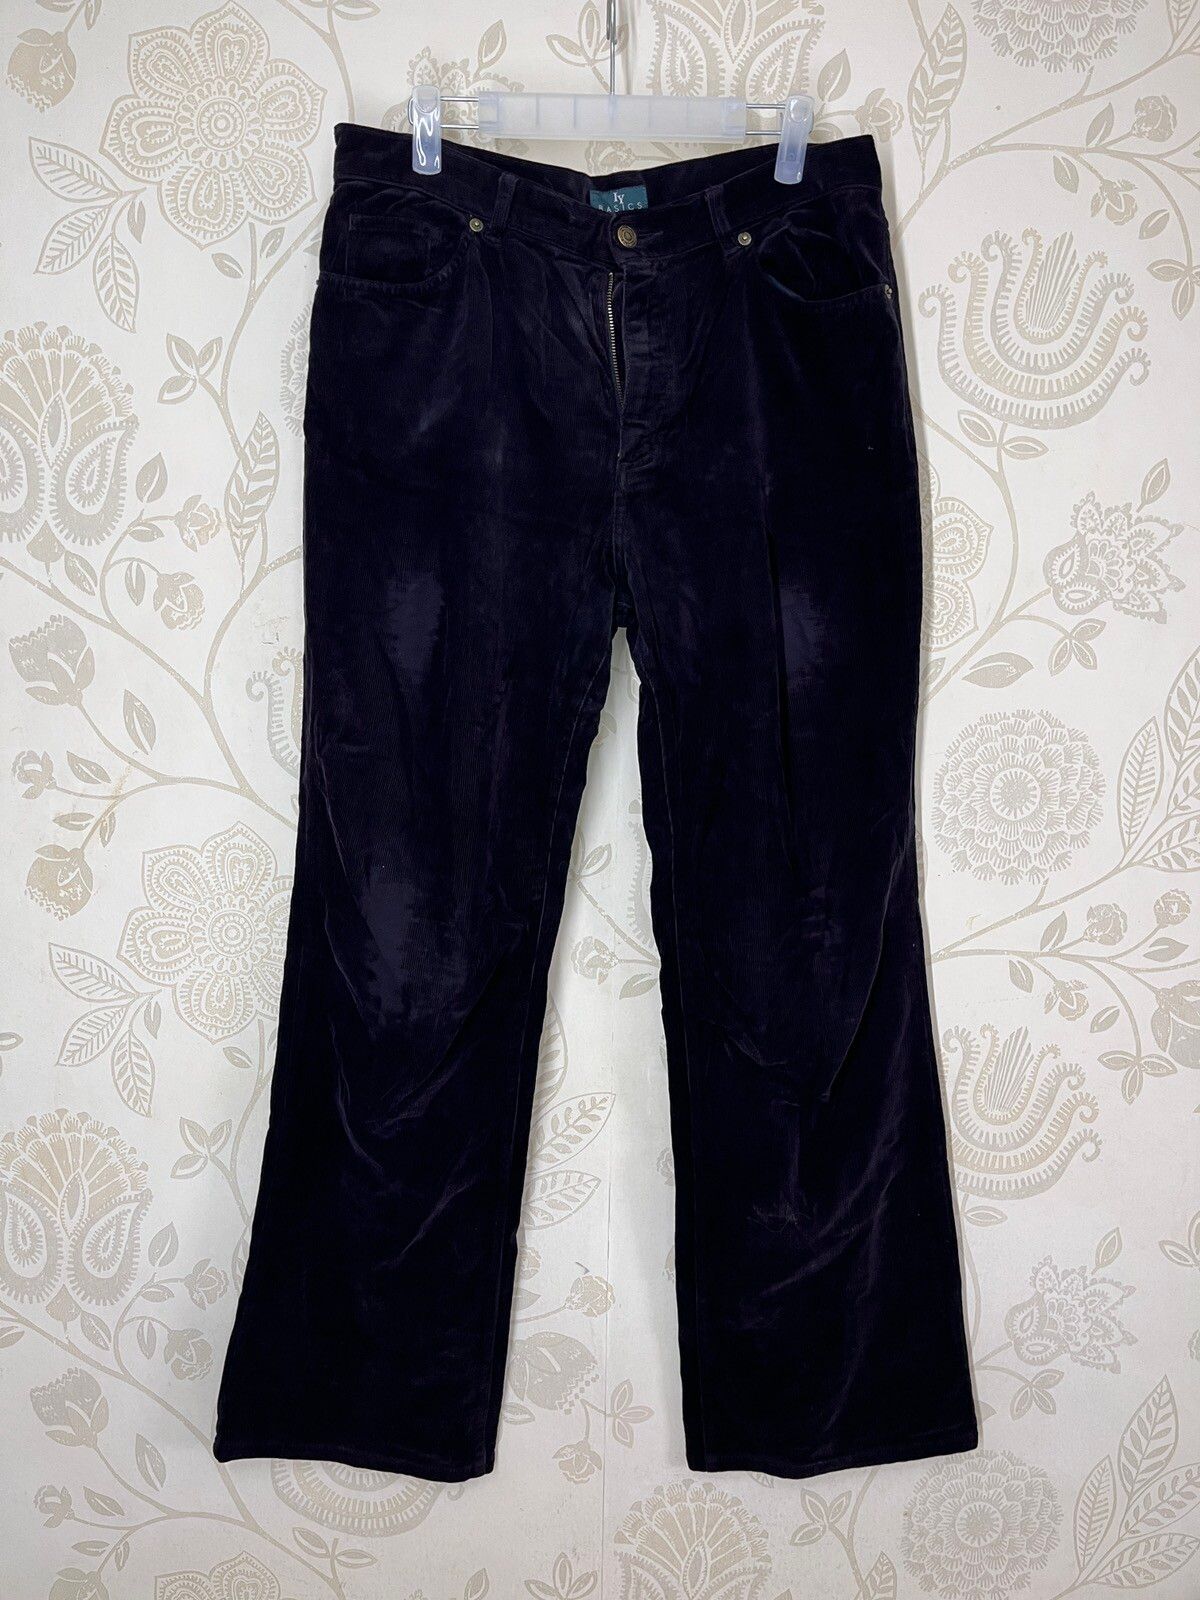 Issey Miyake - IY Basics Flare Denim Jeans Boot Cut Japanese - 1